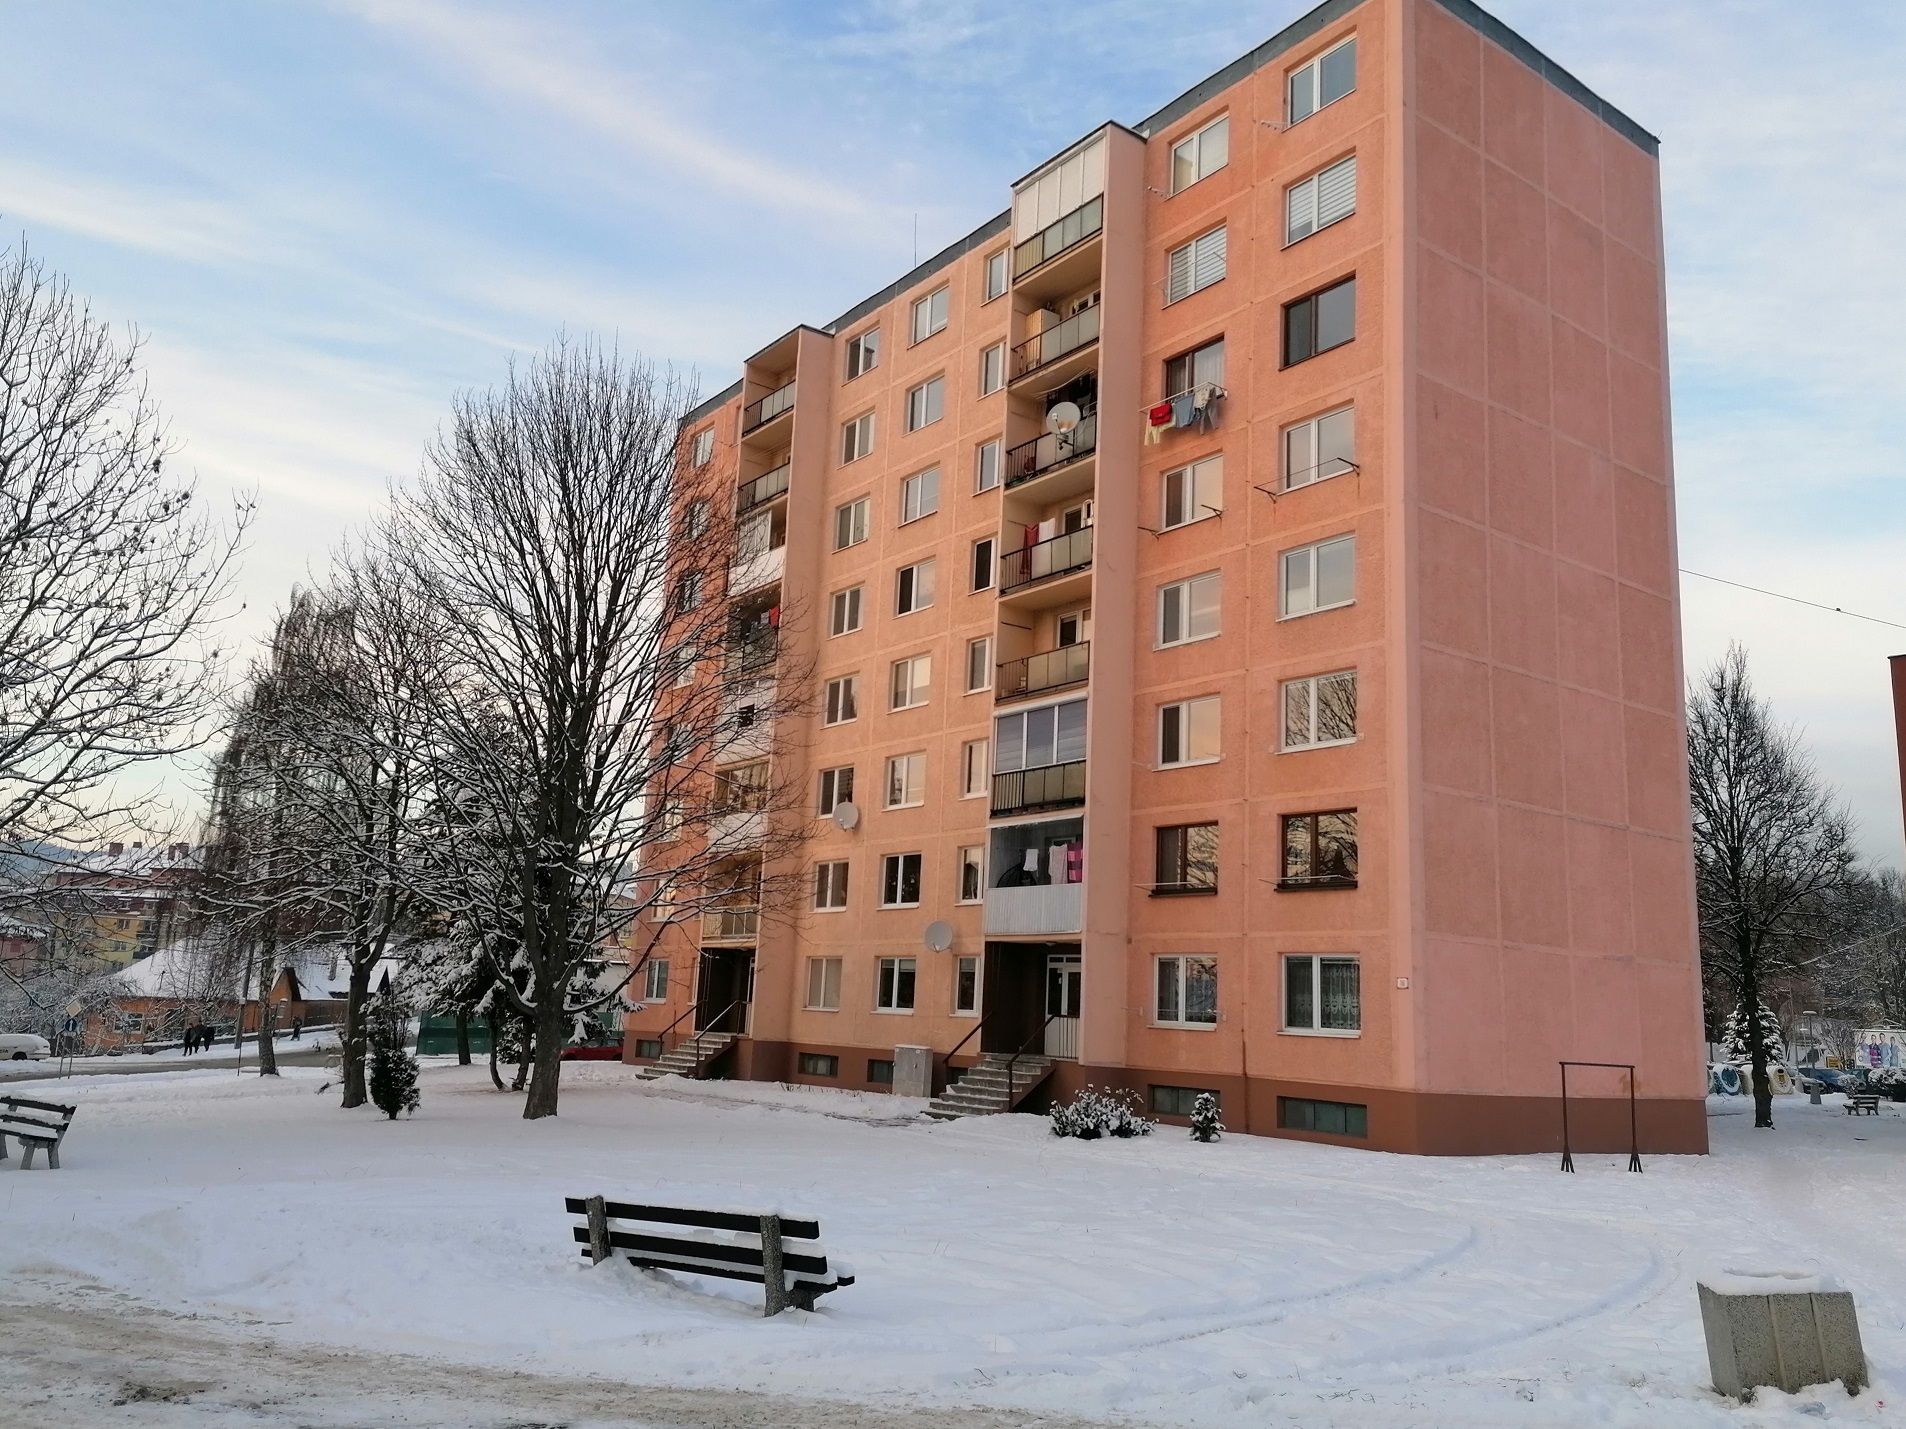 REZERVOVANÉ: 3-izbový čiastočne zrenovovaný byt, Levoča, sídlisko Pri Prameni, blok Jantár